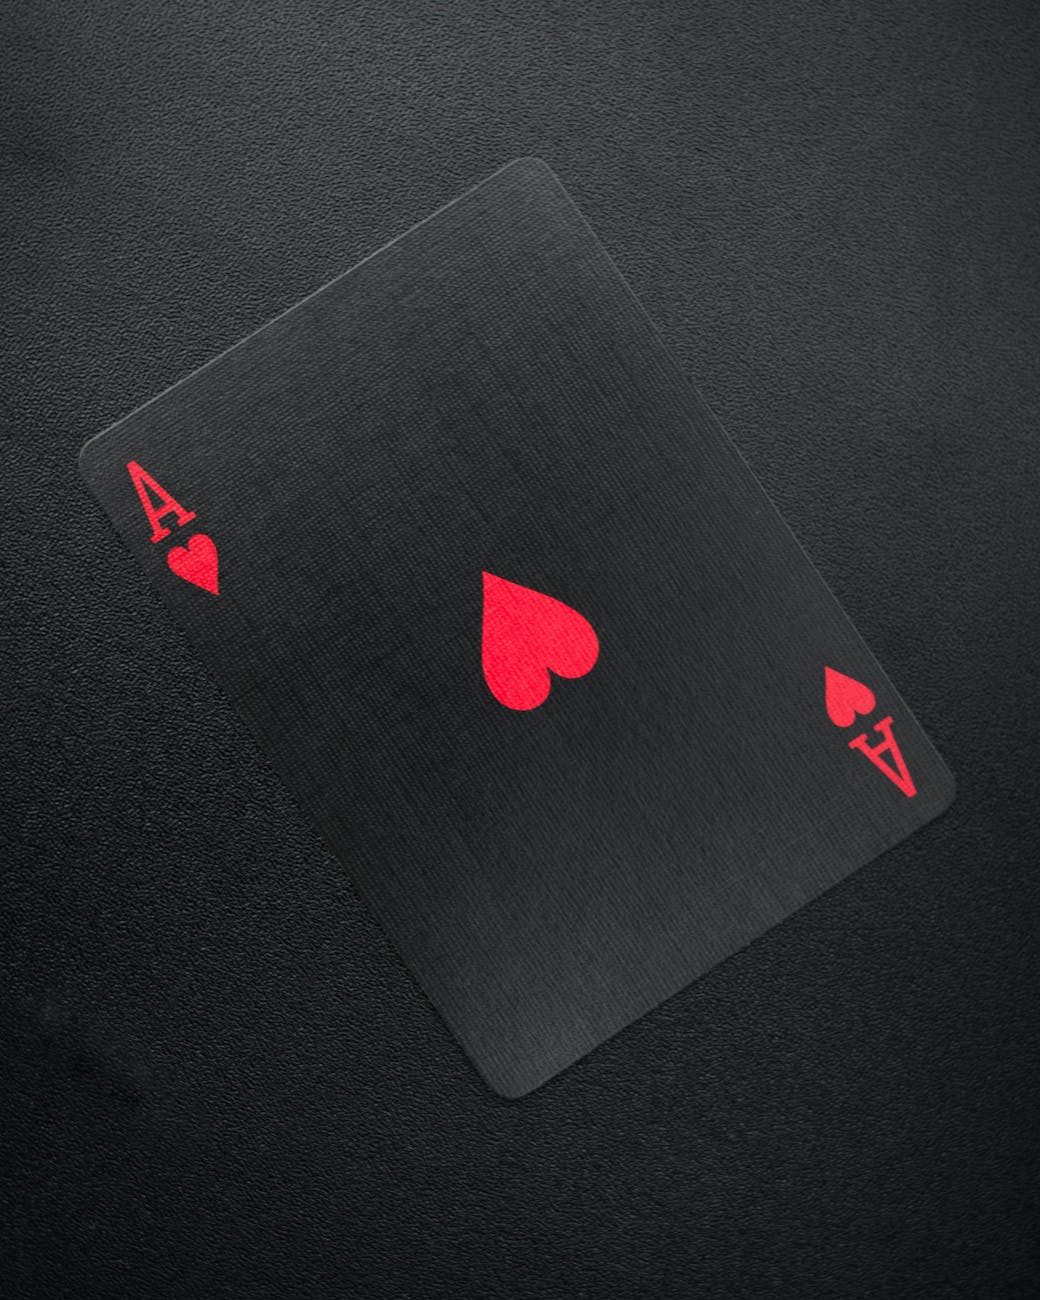 3 card poker 6 card bonus